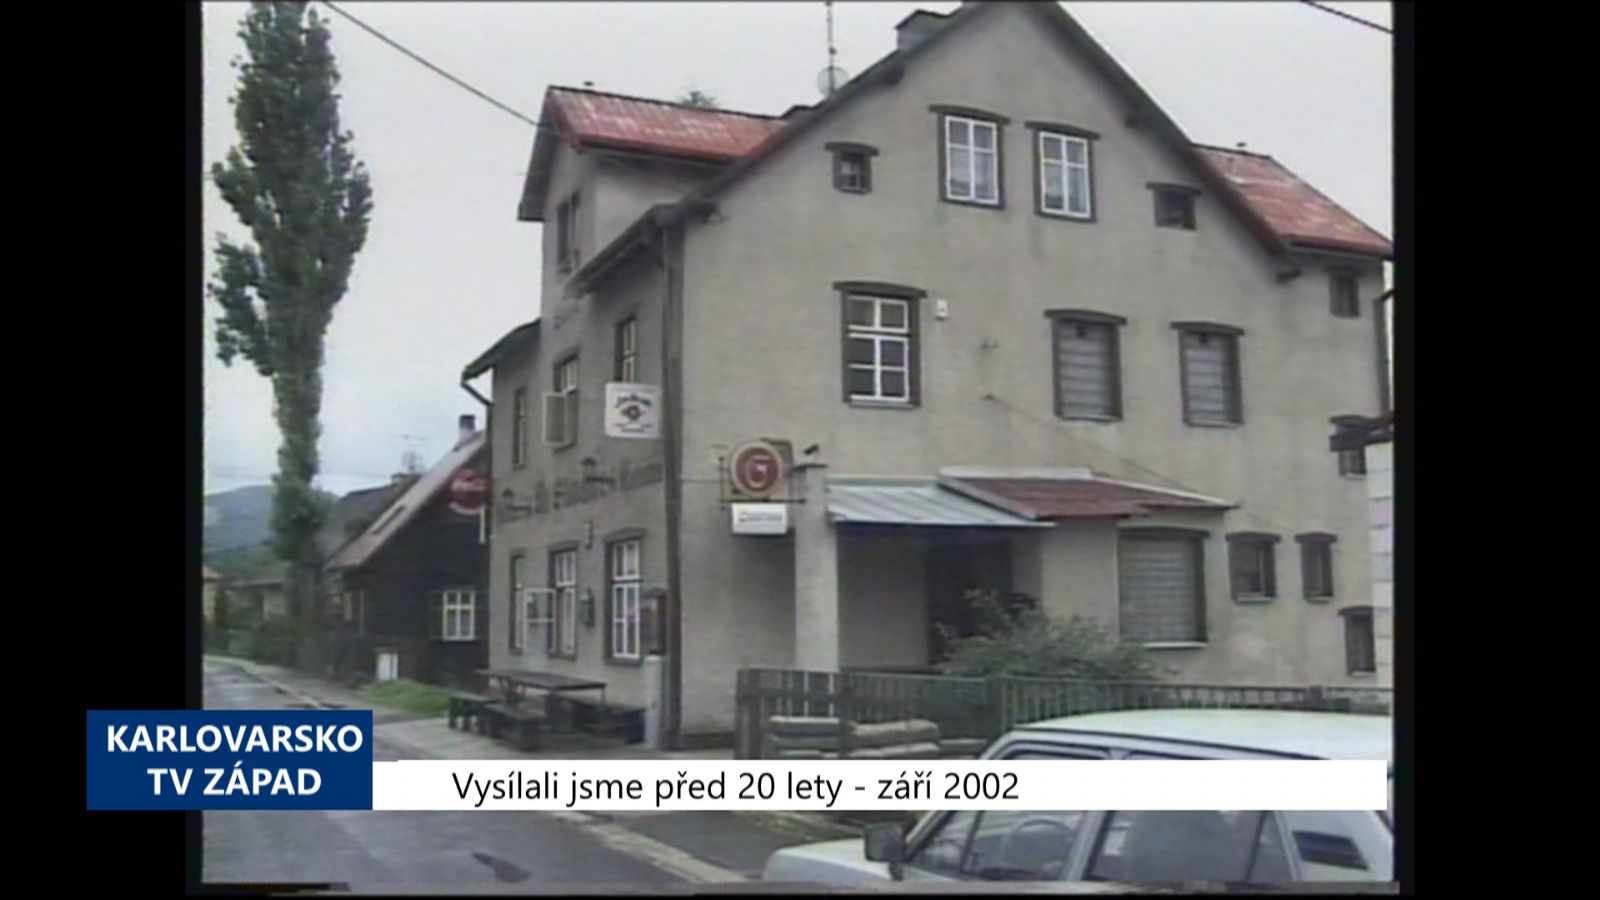 2002 – Sokolov: O omezení provozní doby rozhodnou Zastupitelé (TV Západ)